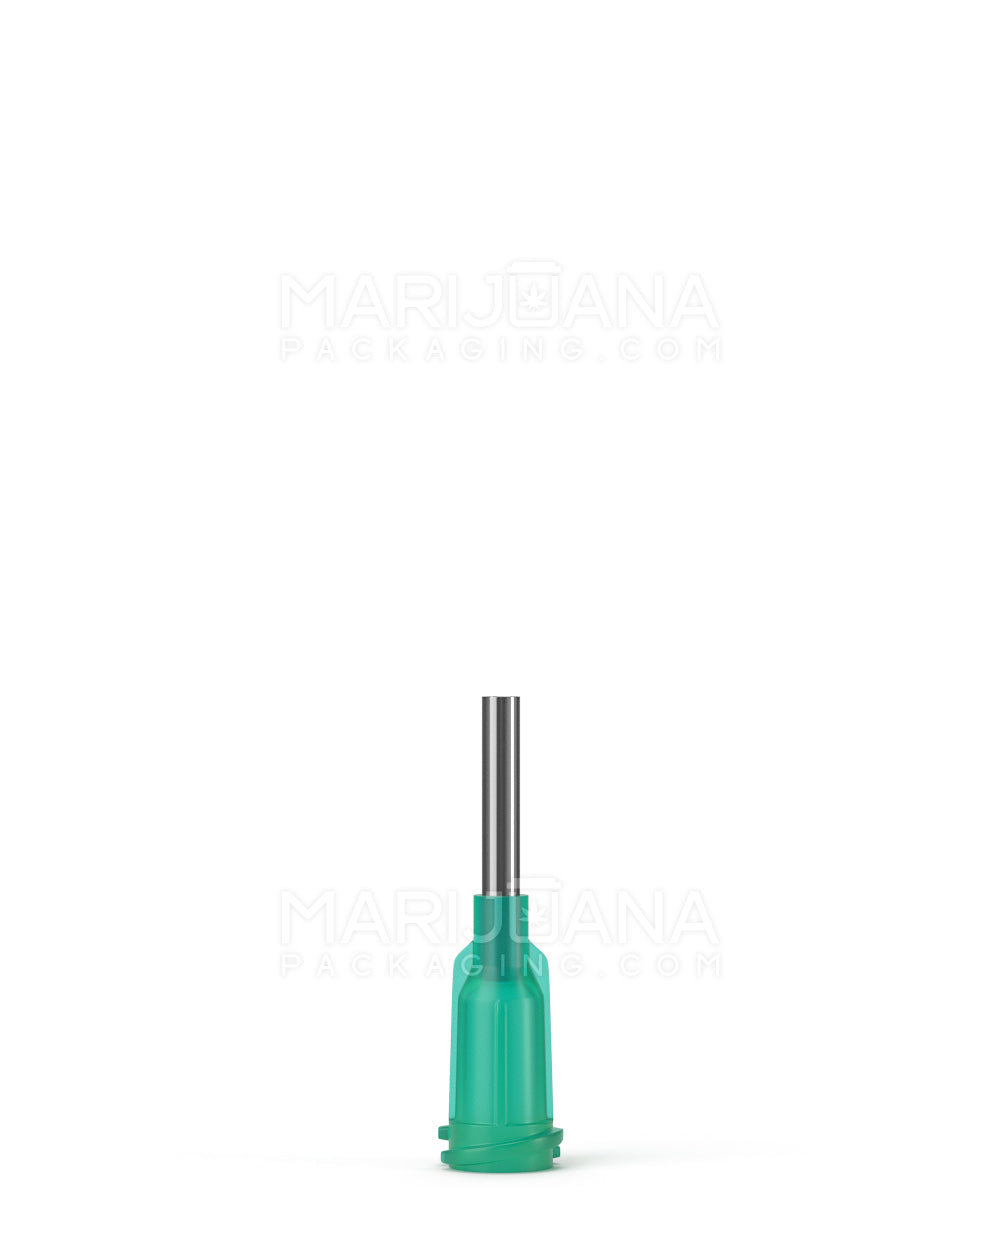 Green Replacement Needles | 0.5in - 14 Gauge - 15 Count - 1